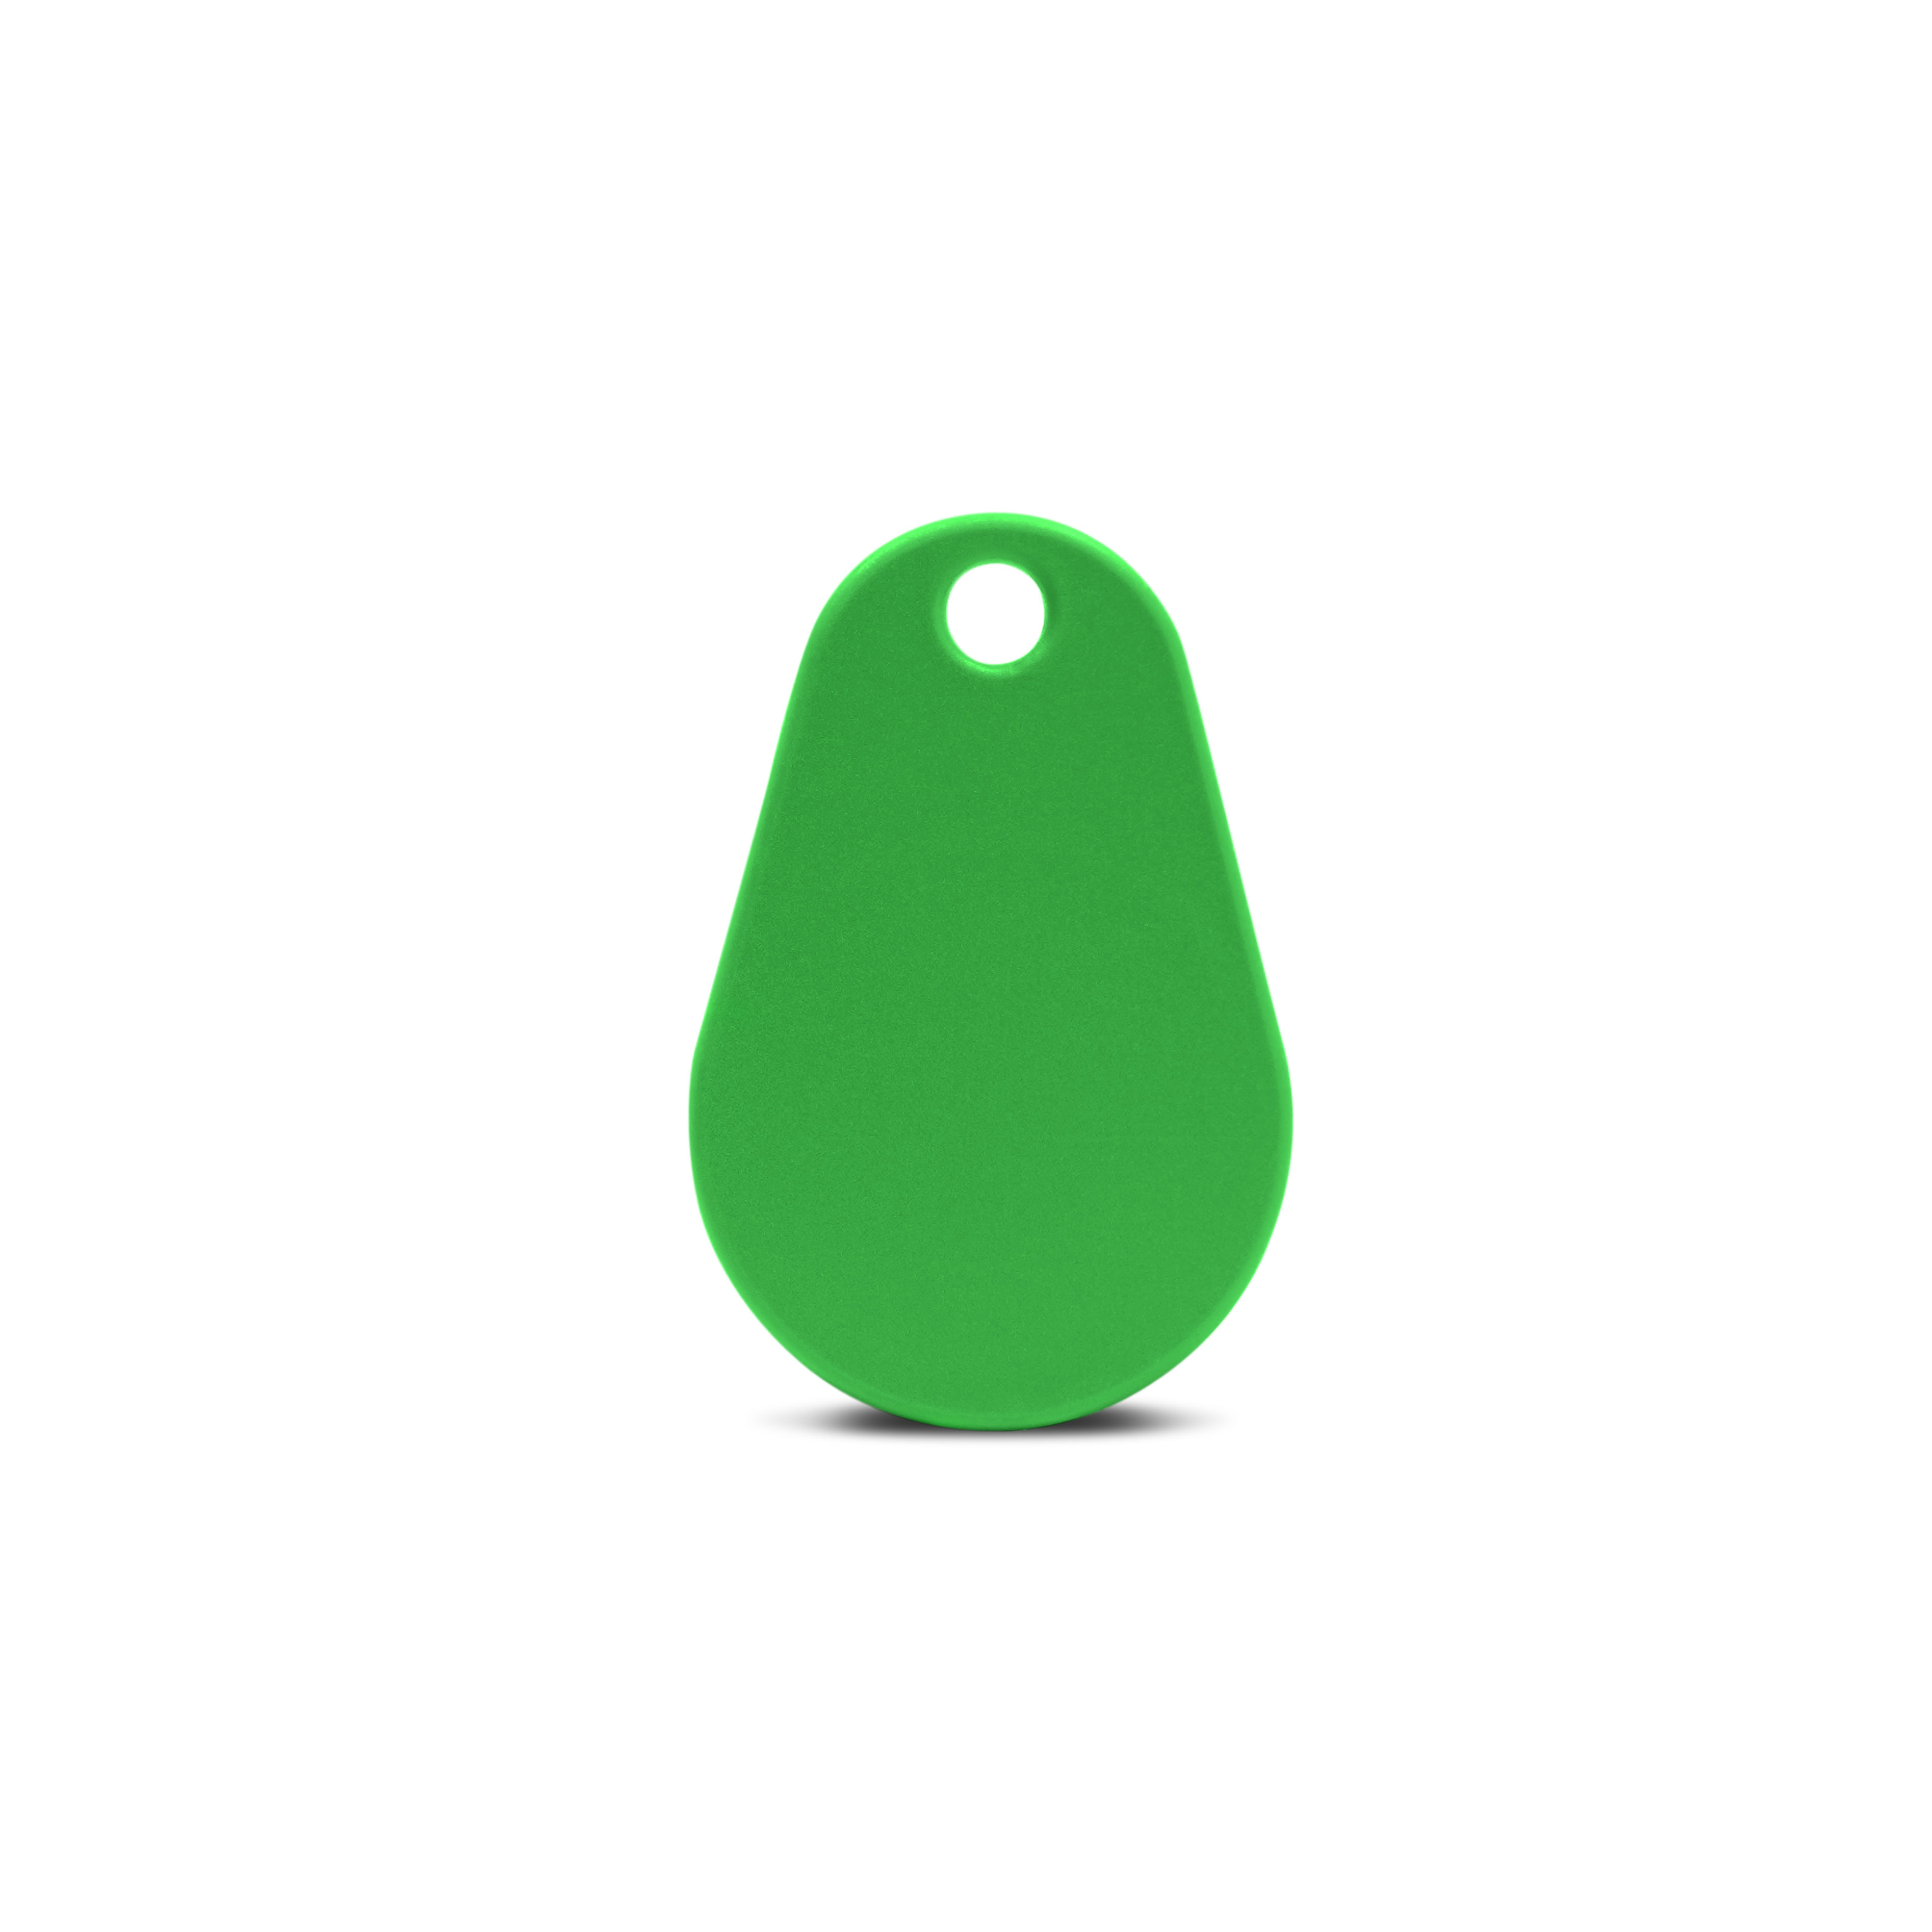 Vorderseite NFC Schlüsselanhänger in grün aus Polyamid